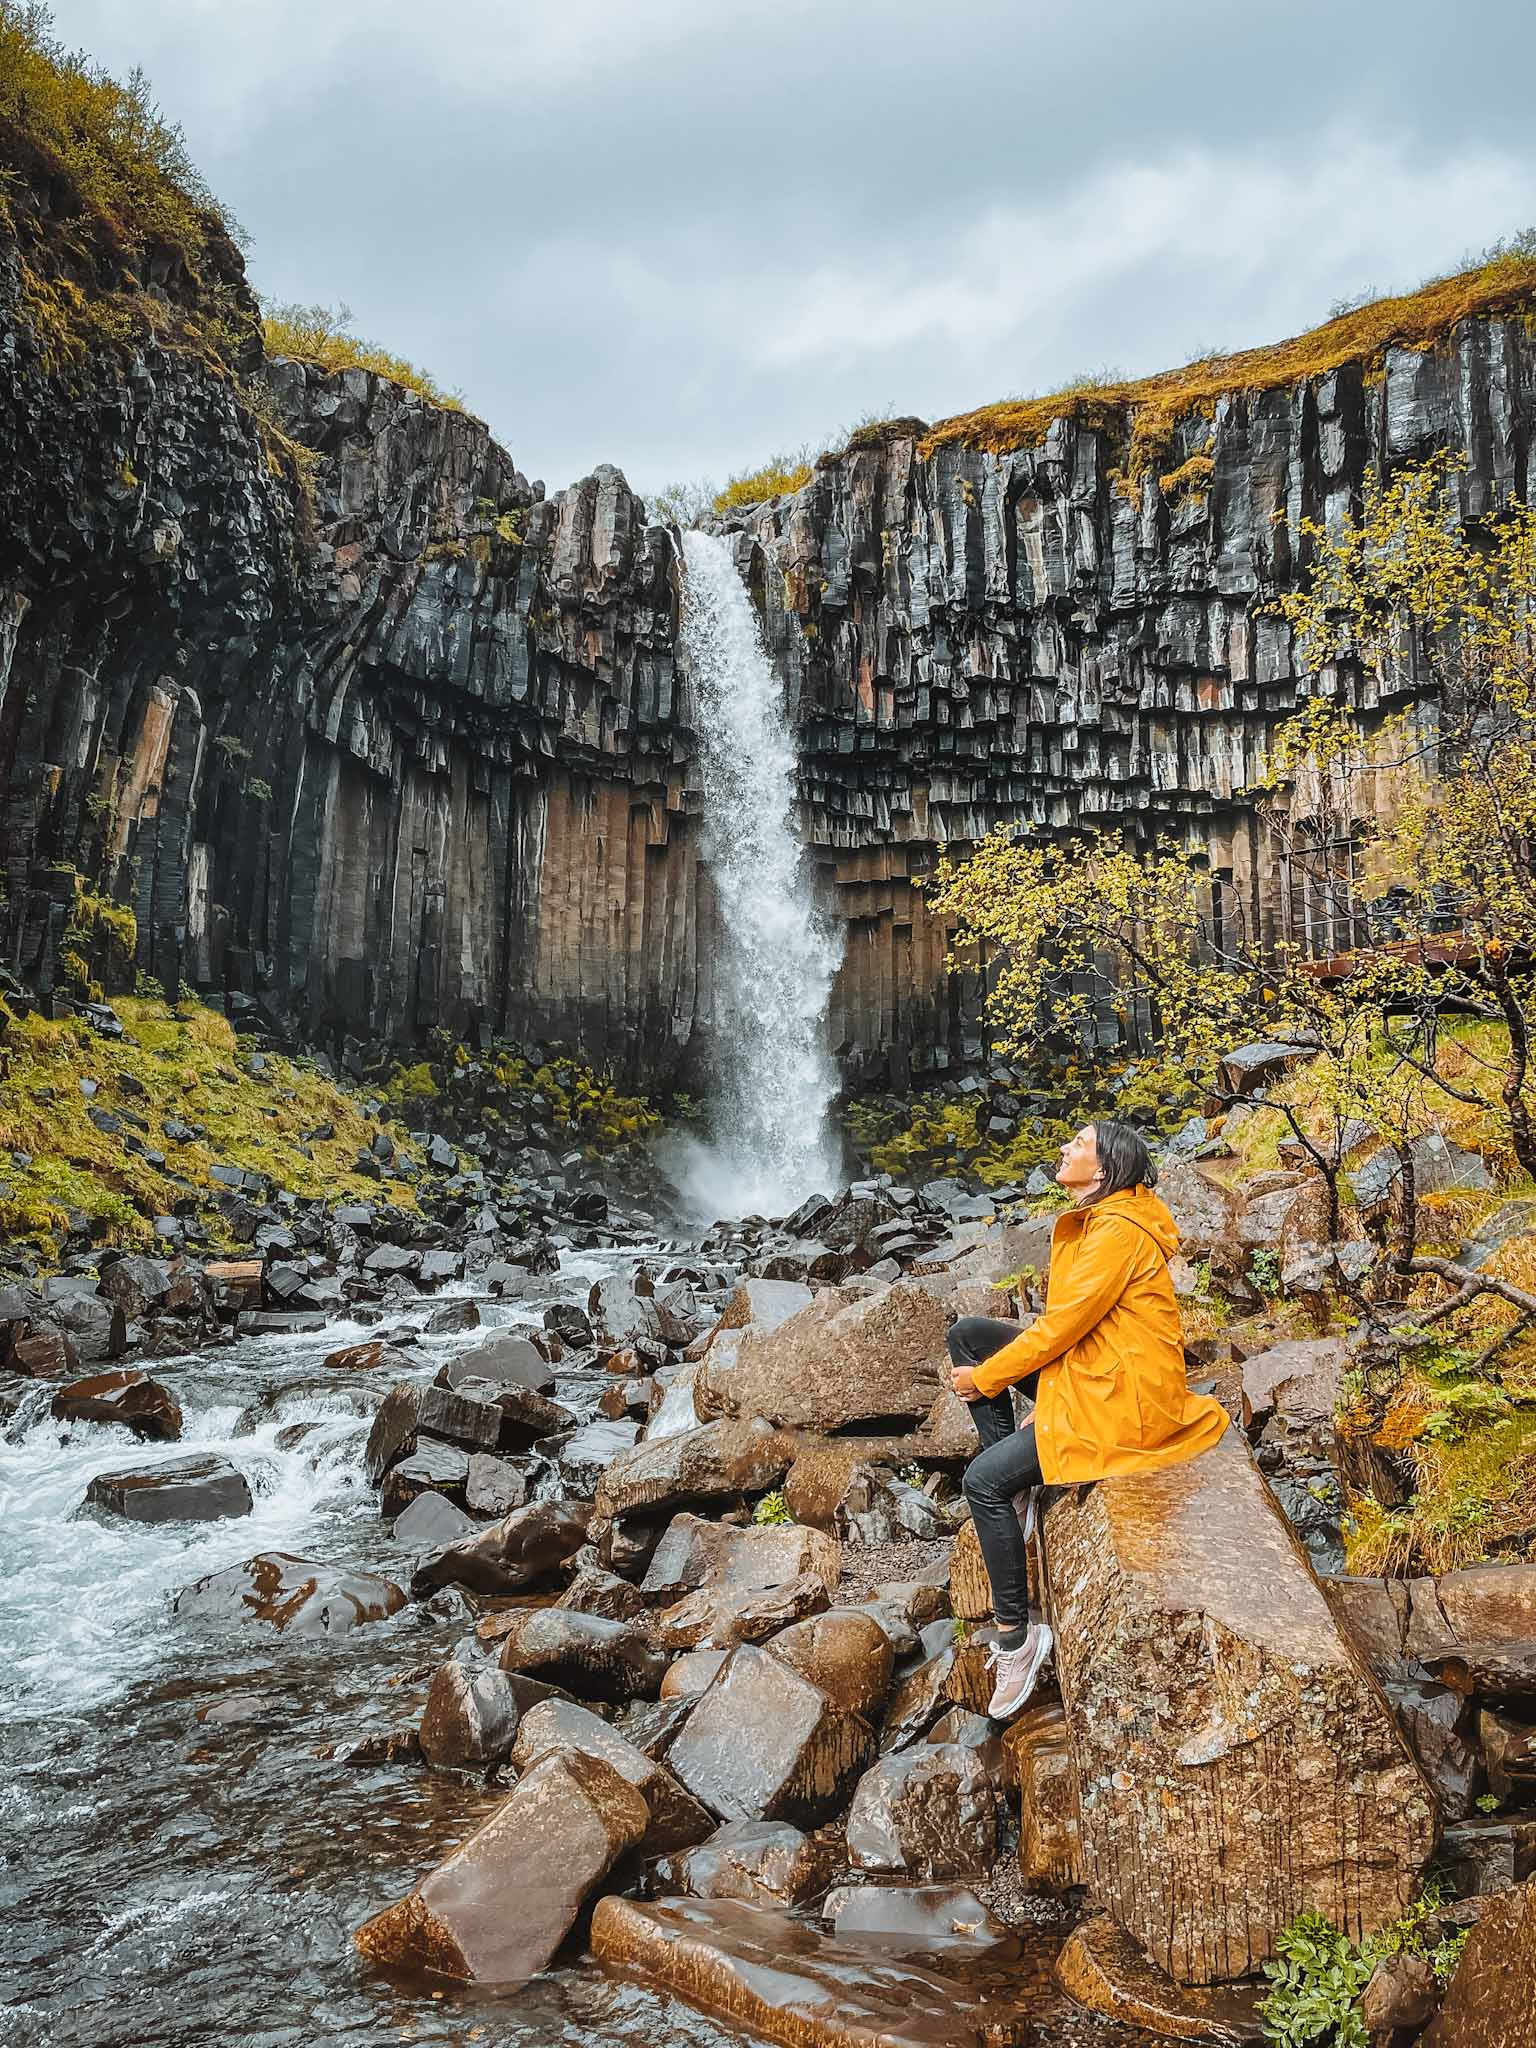 Basalt columns in Iceland - Svartifoss waterfall